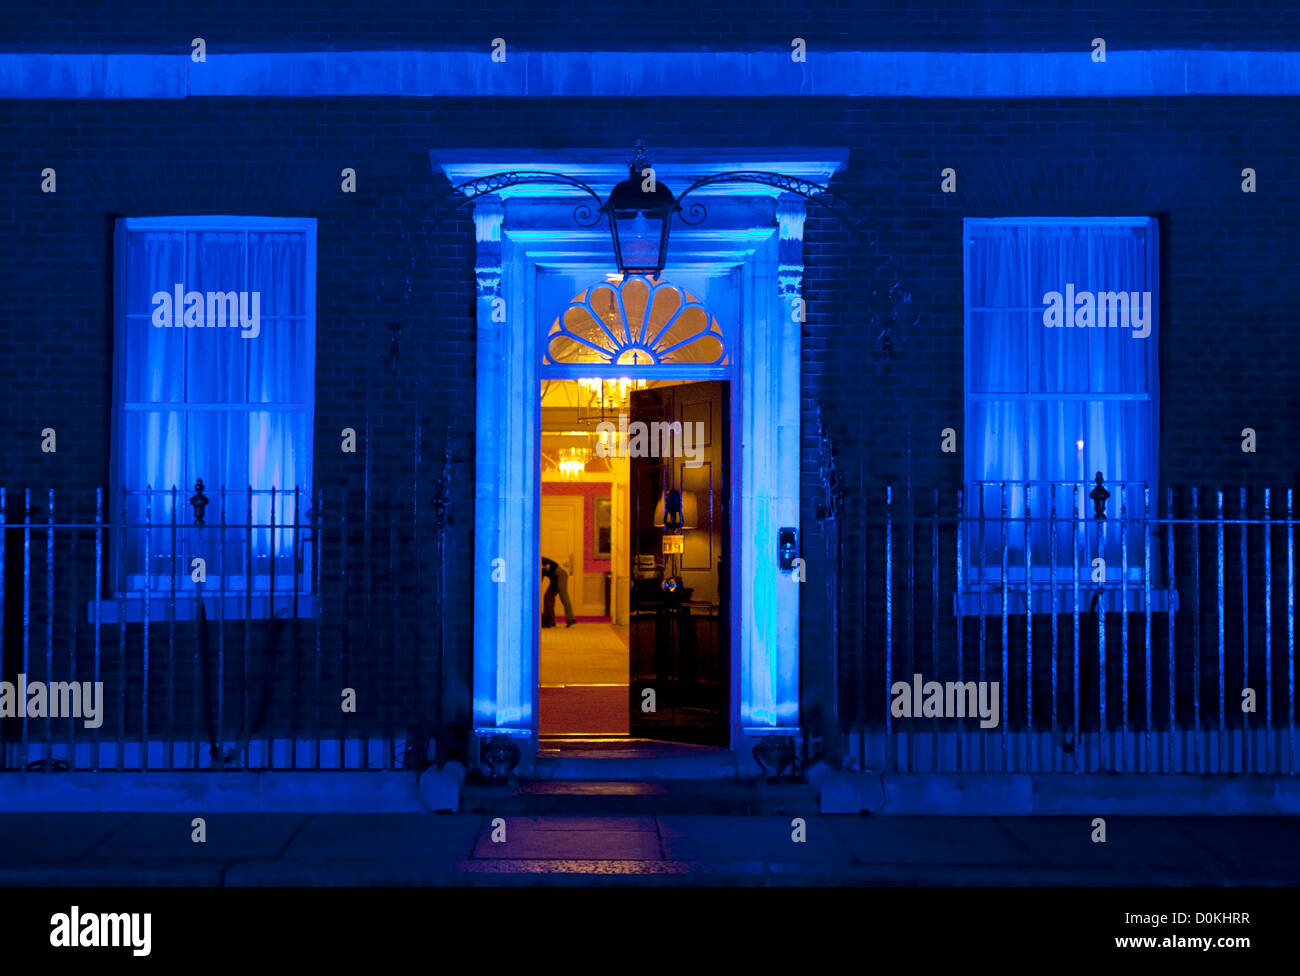 14/11/2012. London, Regno Unito Downing street questa mattina (14/11/2012), illuminato in blu, per la giornata mondiale del diabete. Foto Stock